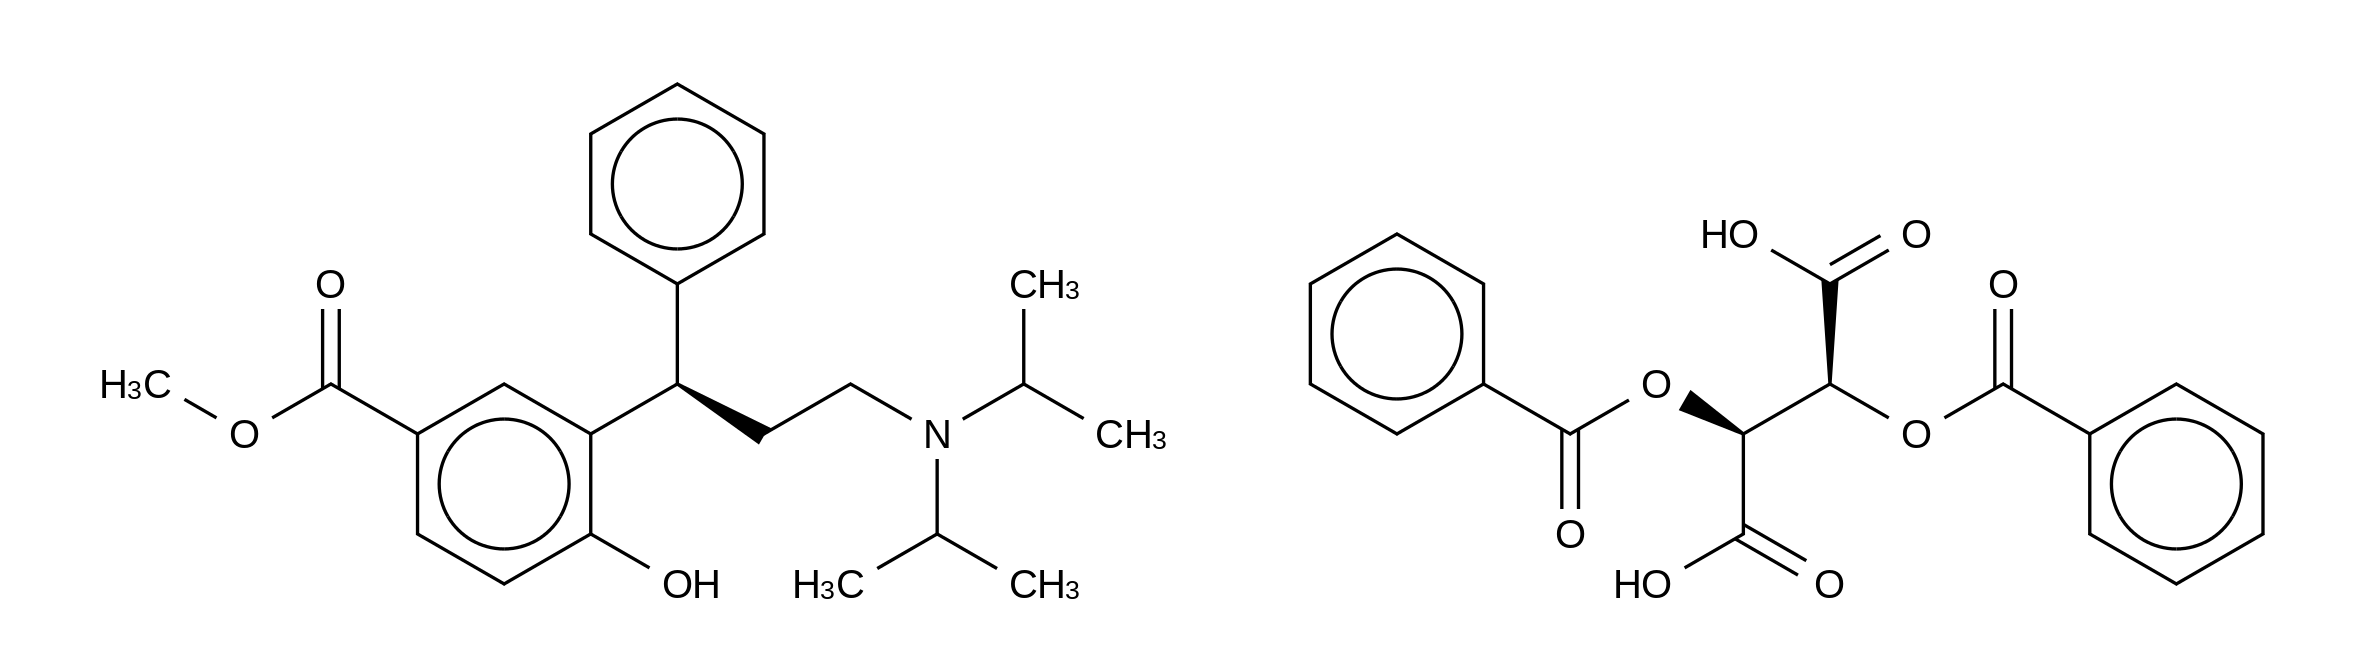 3-[(1R)-3-Bisisopropylamino-1-phenylpropyl-4-hydroxy Benzoic Acid Methyl Ester Dibenzoyl-D-tartaric Acid Salt